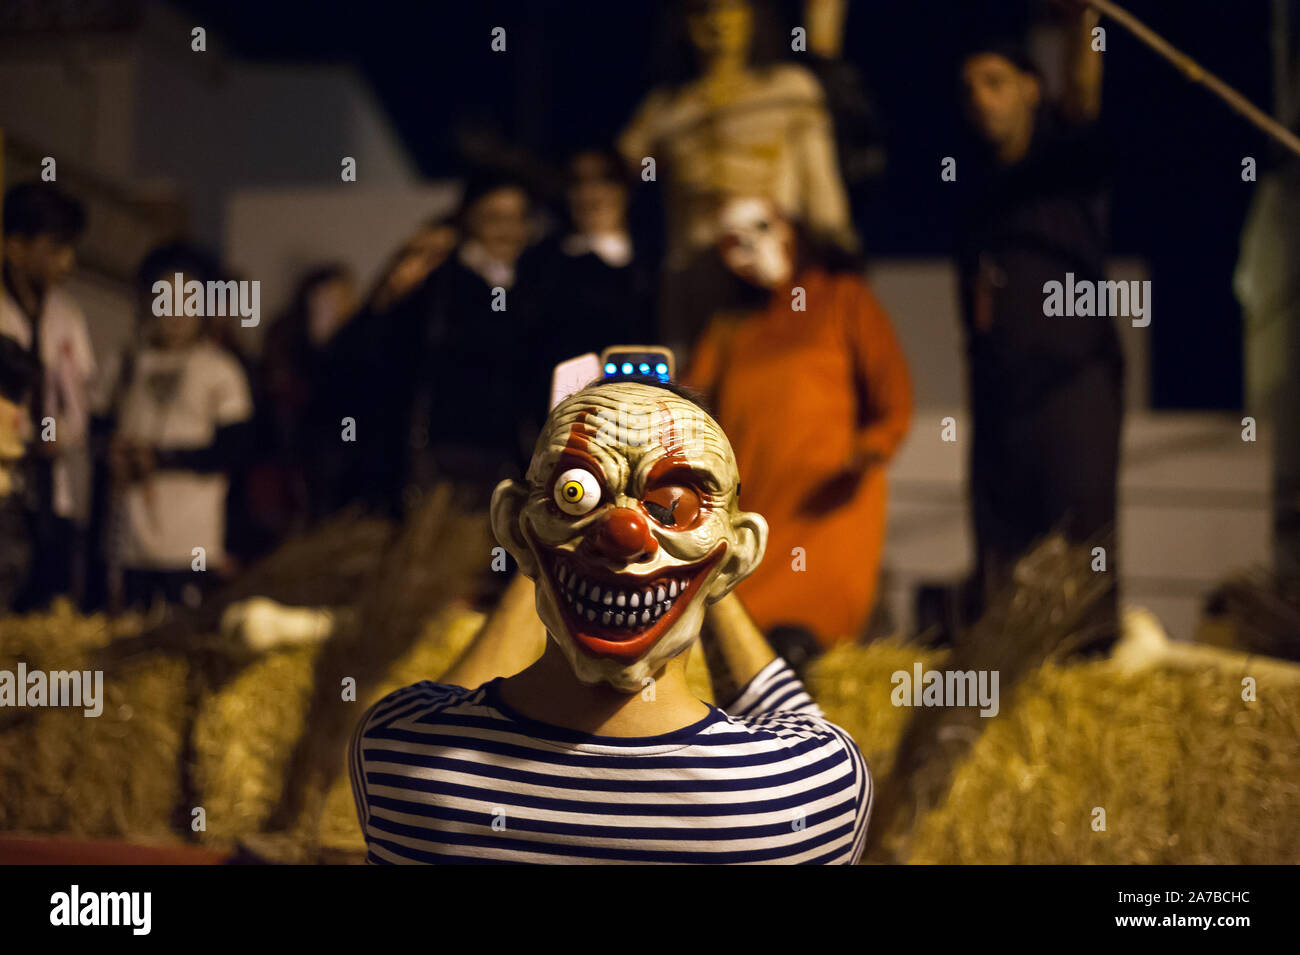 Malaga, Spanien. 31 Okt, 2019. Ein Mann mit einem teuflischen Maske gekleidet nimmt eine selfie während der VI-Ausgabe von 'Churriana Noche del Terror' (churriana Horror Night) zu feiern, die der Halloween Nacht in der Nachbarschaft von Churriana. Wohnsitz in Churriana beteiligen sich an der Halloween Tag mit schrecklichen Kostüme gekleidet, ihre Häuser zu verzieren und mit unheimlichen Leistungen entlang der Straßen. Die 'Churriana Horror Night' ist eine der beliebtesten Veranstaltungen in der Stadt markiert die Halloween Tag, und bei dieser Gelegenheit das Thema der Ausgabe ist die Hexen. Credit: SOPA Images Limited/Alamy leben Nachrichten Stockfoto